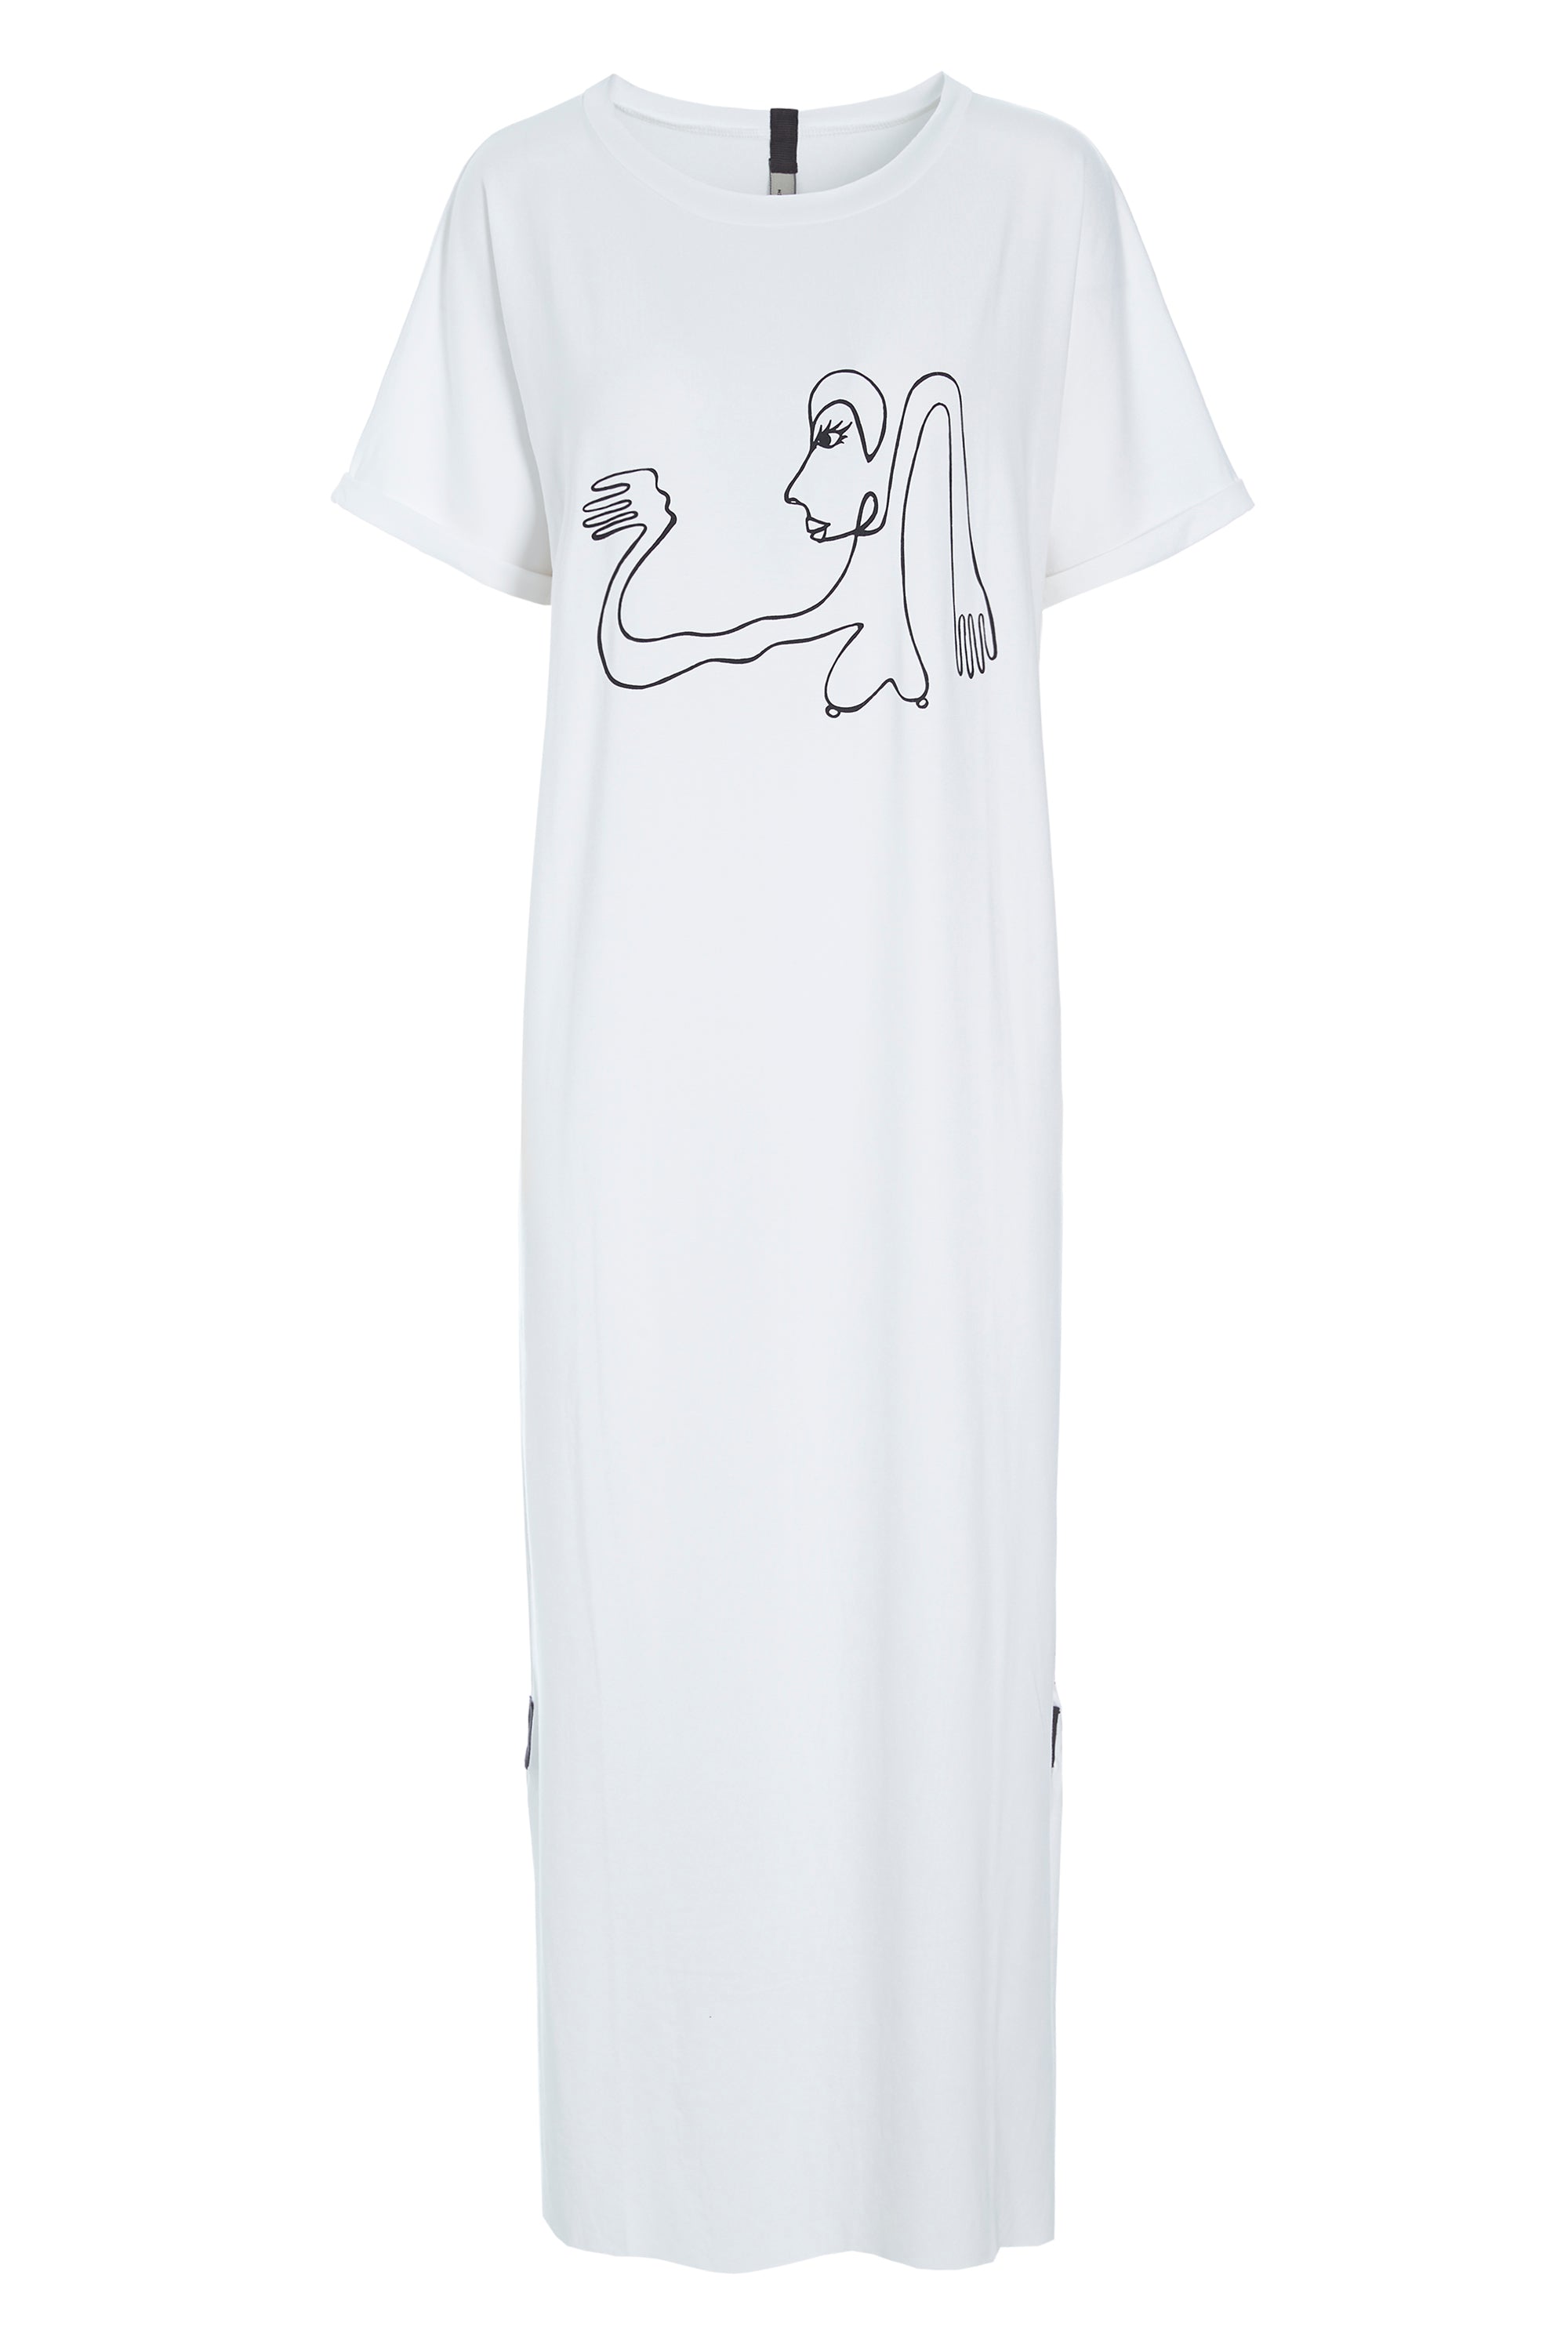 HENRIETTE STEFFENSEN COPENHAGEN LONG DRESS WITH PRINT - 98038 DRESSES jersey WHITE 816